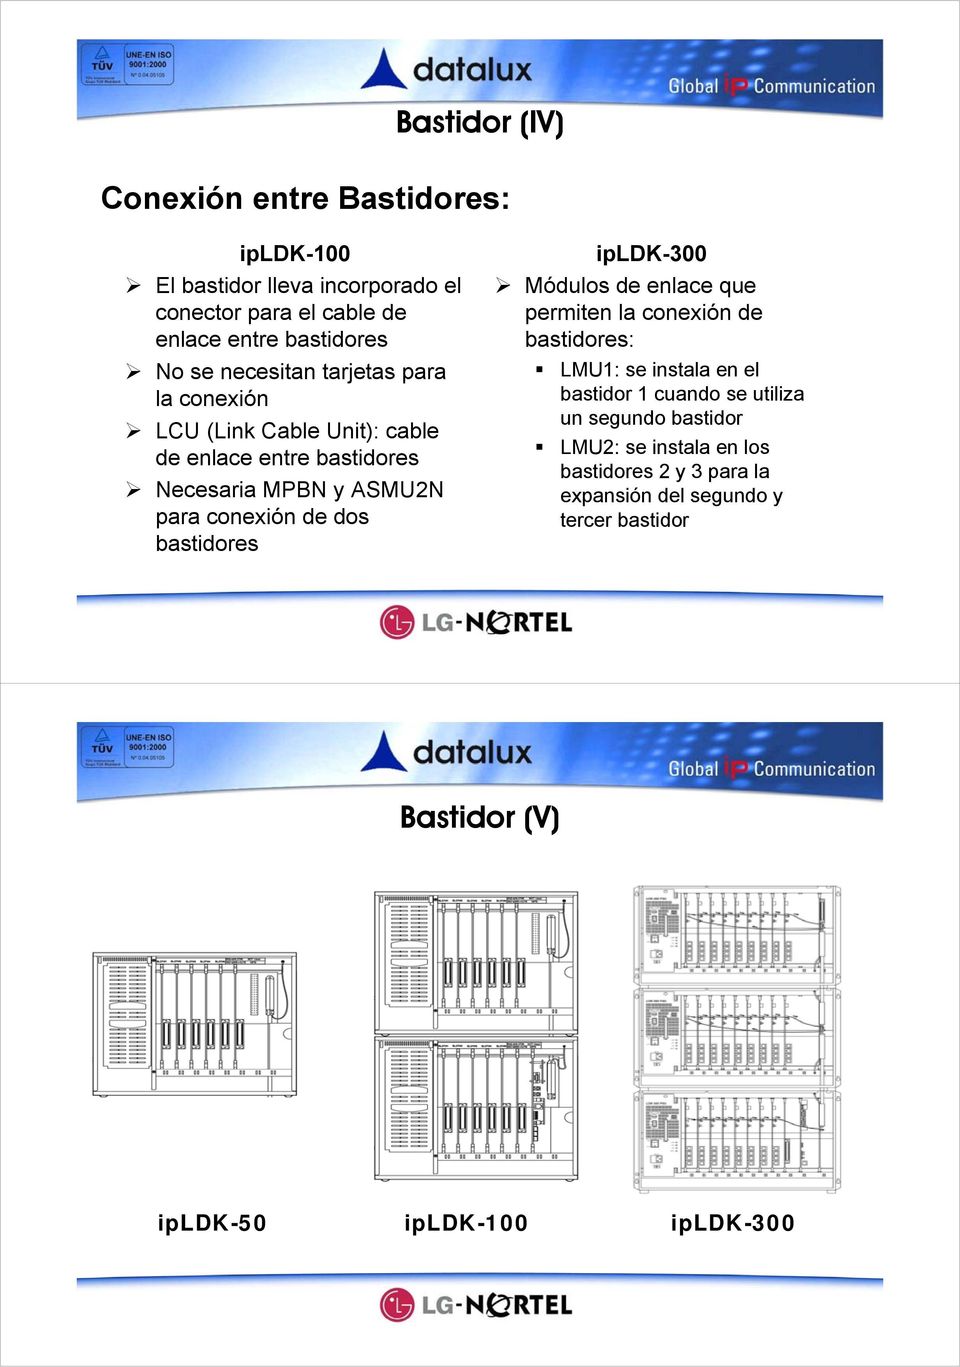 bastidores ipldk-300 Módulos de enlace que permiten la conexión de bastidores: LMU1: se instala en el bastidor 1 cuando se utiliza un